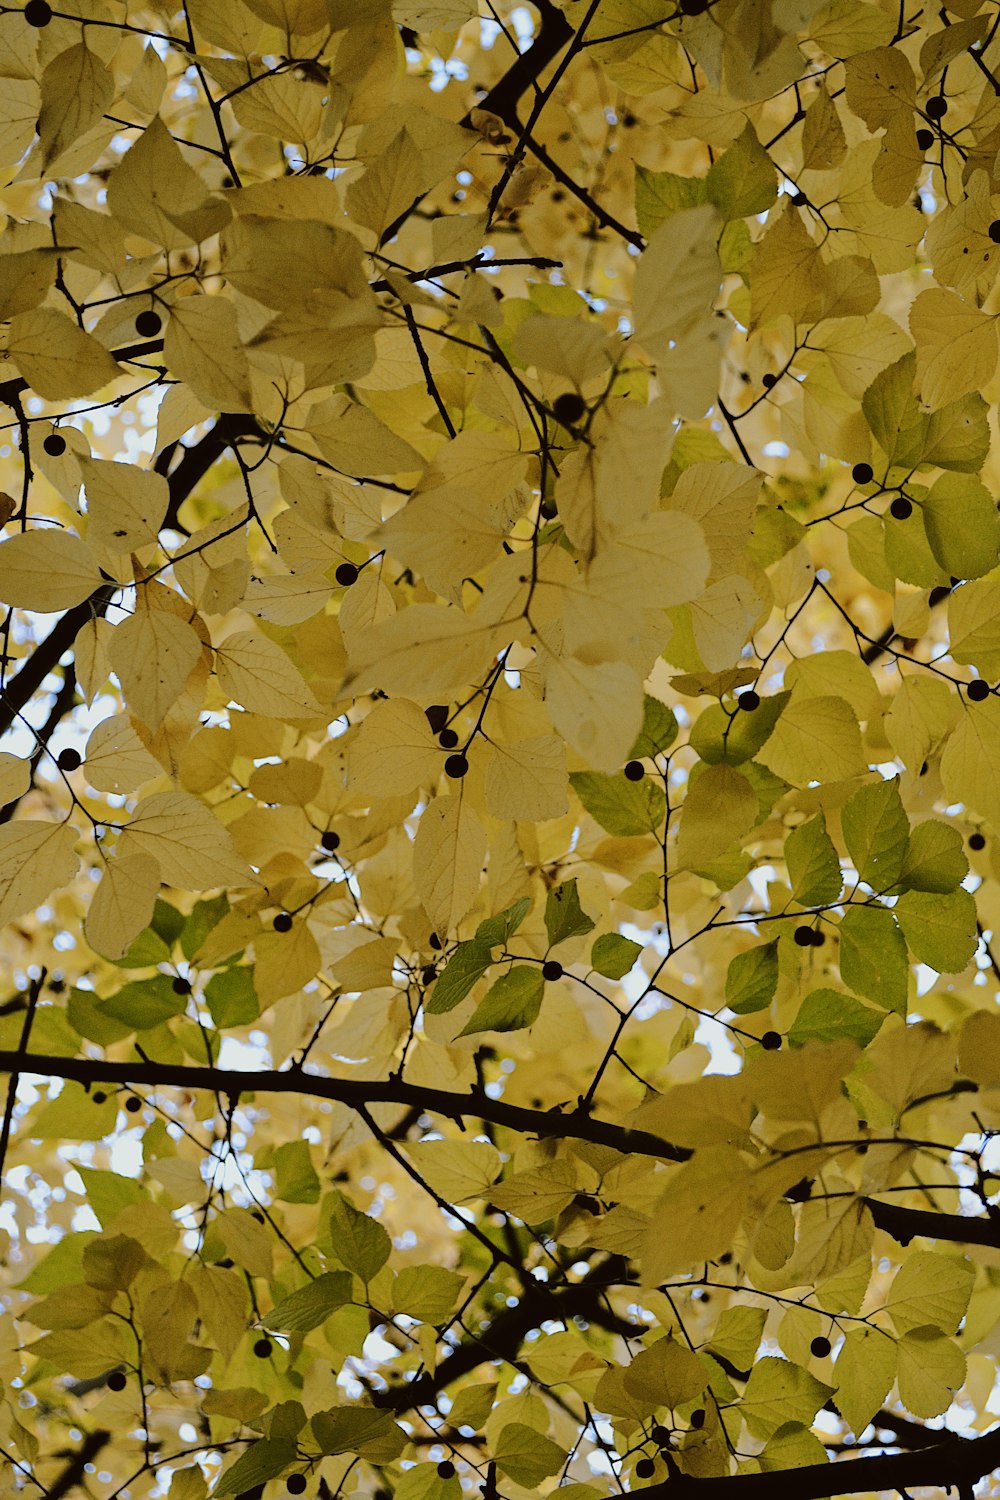 un arbre aux feuilles jaunes